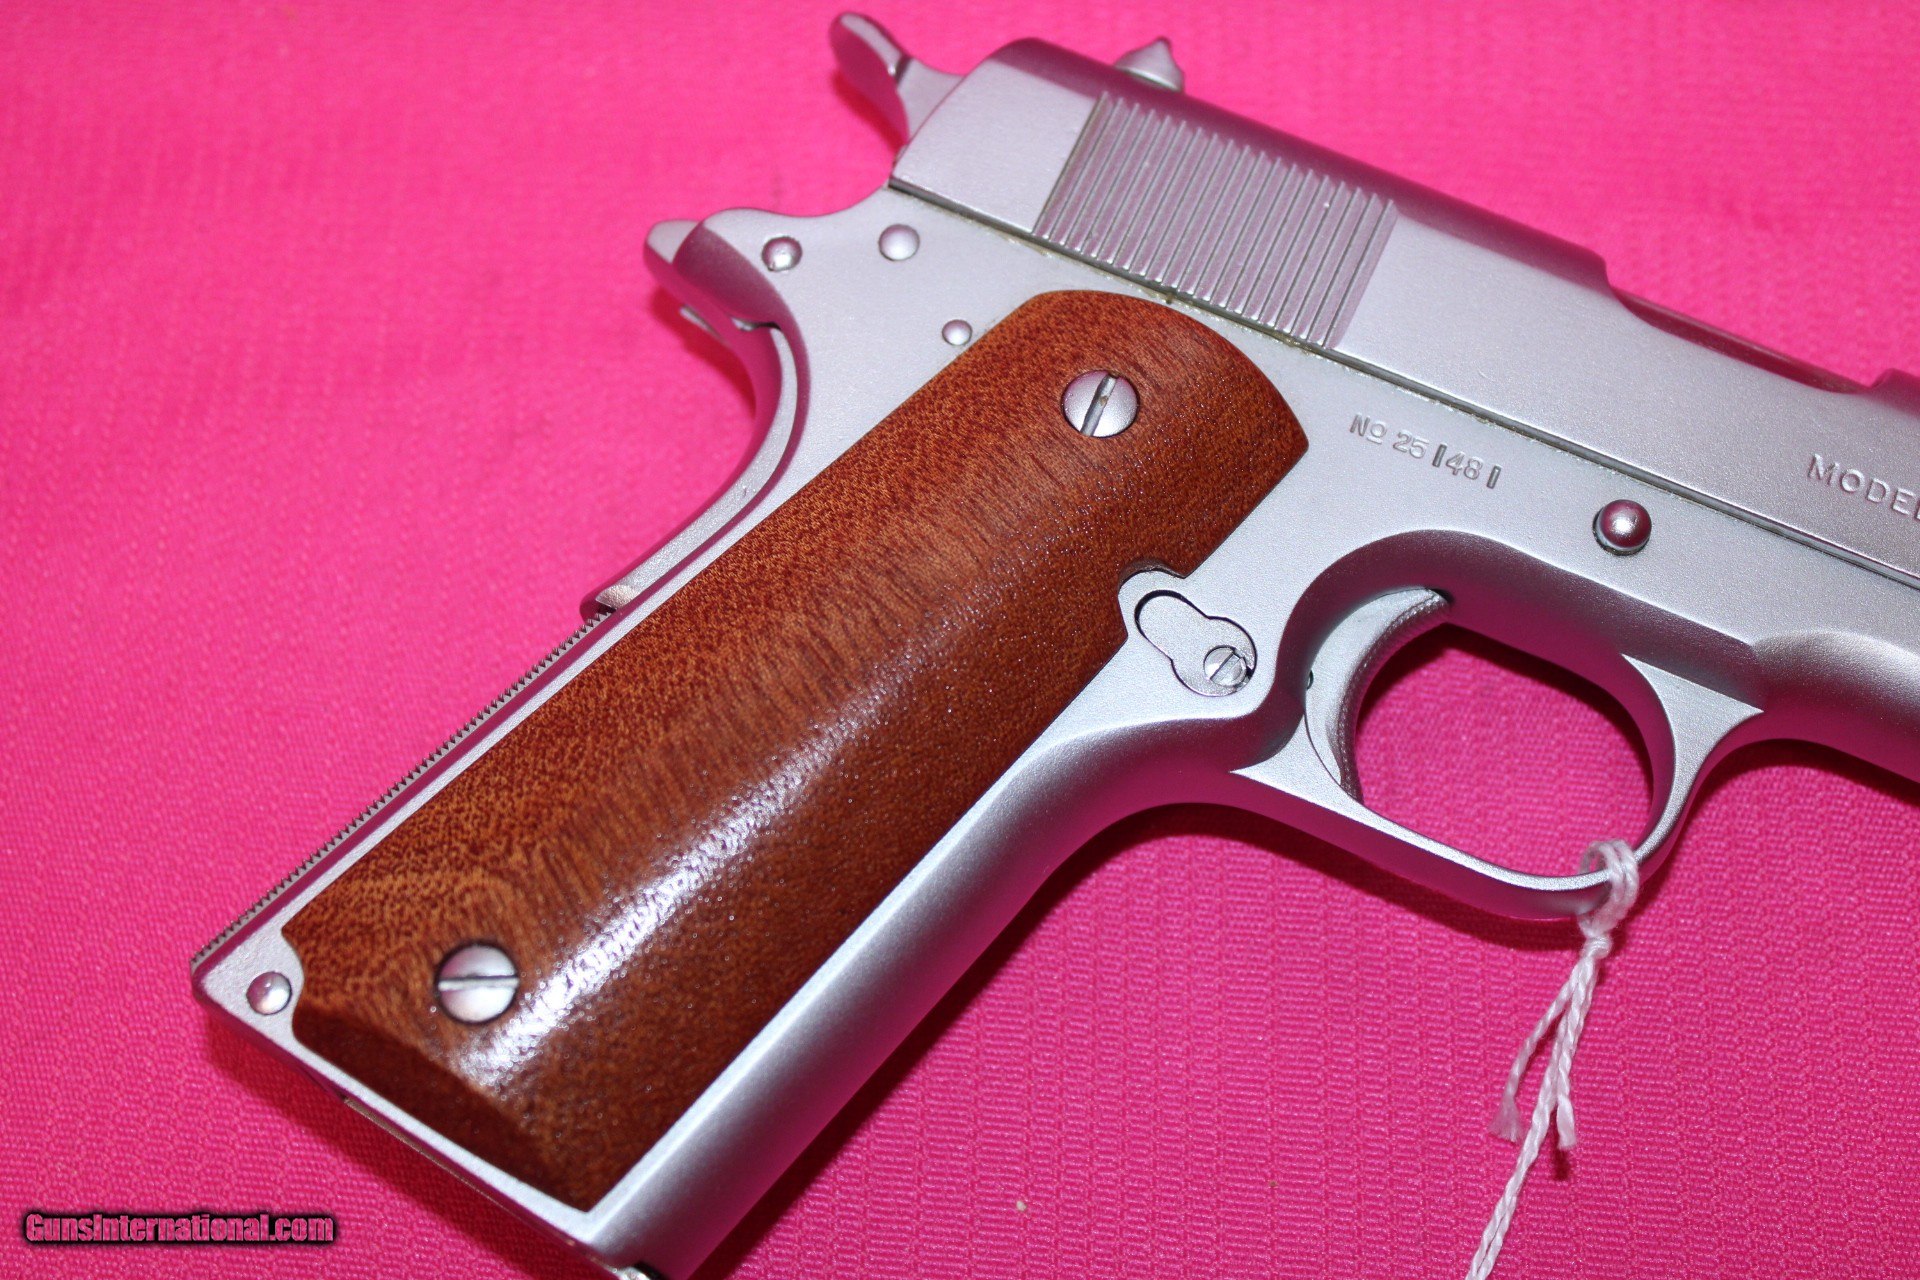 Colt 1911 Custom